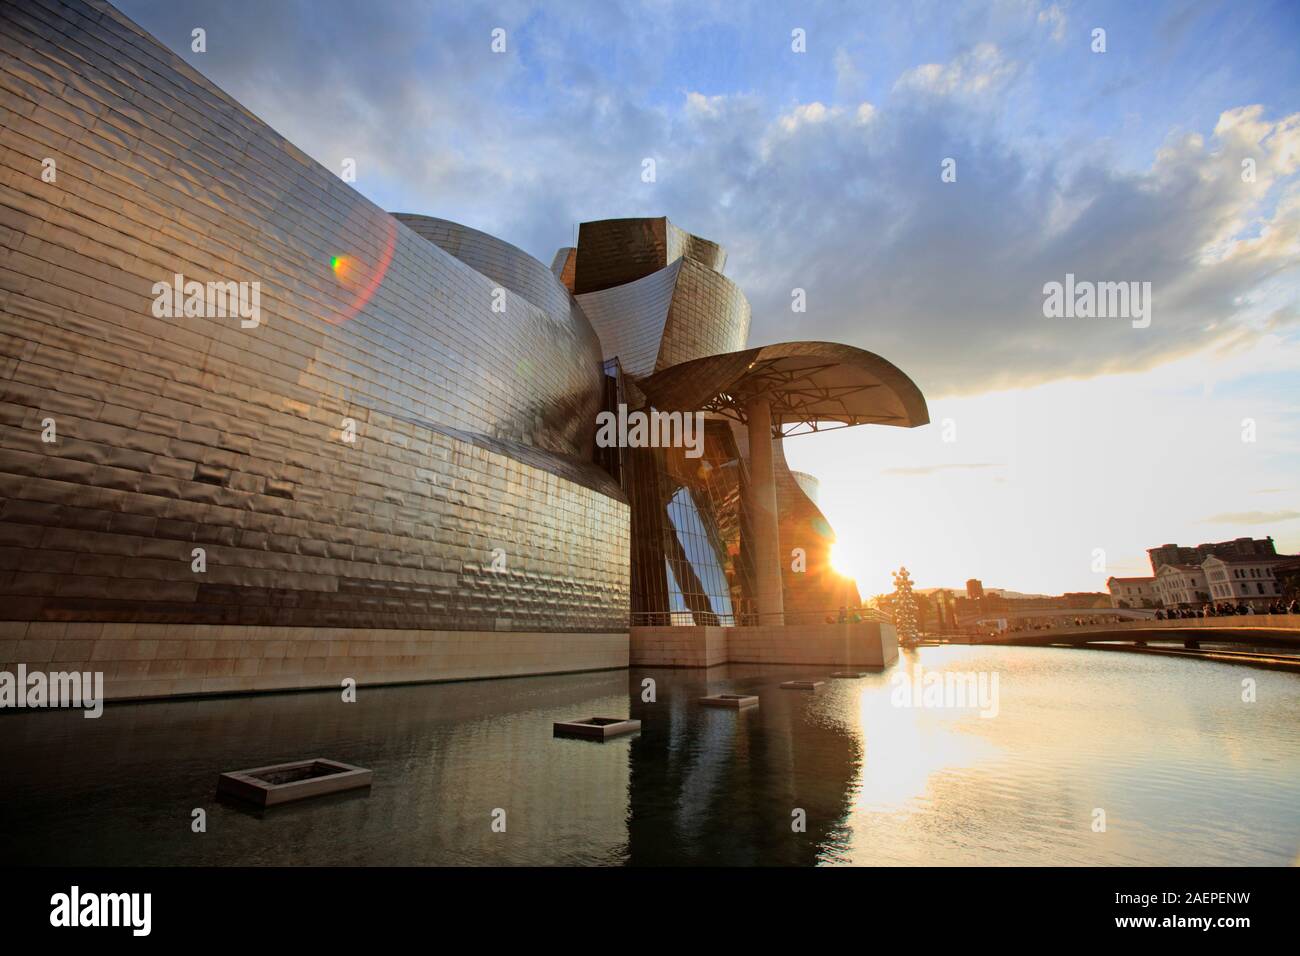 The modern Guggenheim Museum at sunset, Bilbao, Spain Stock Photo